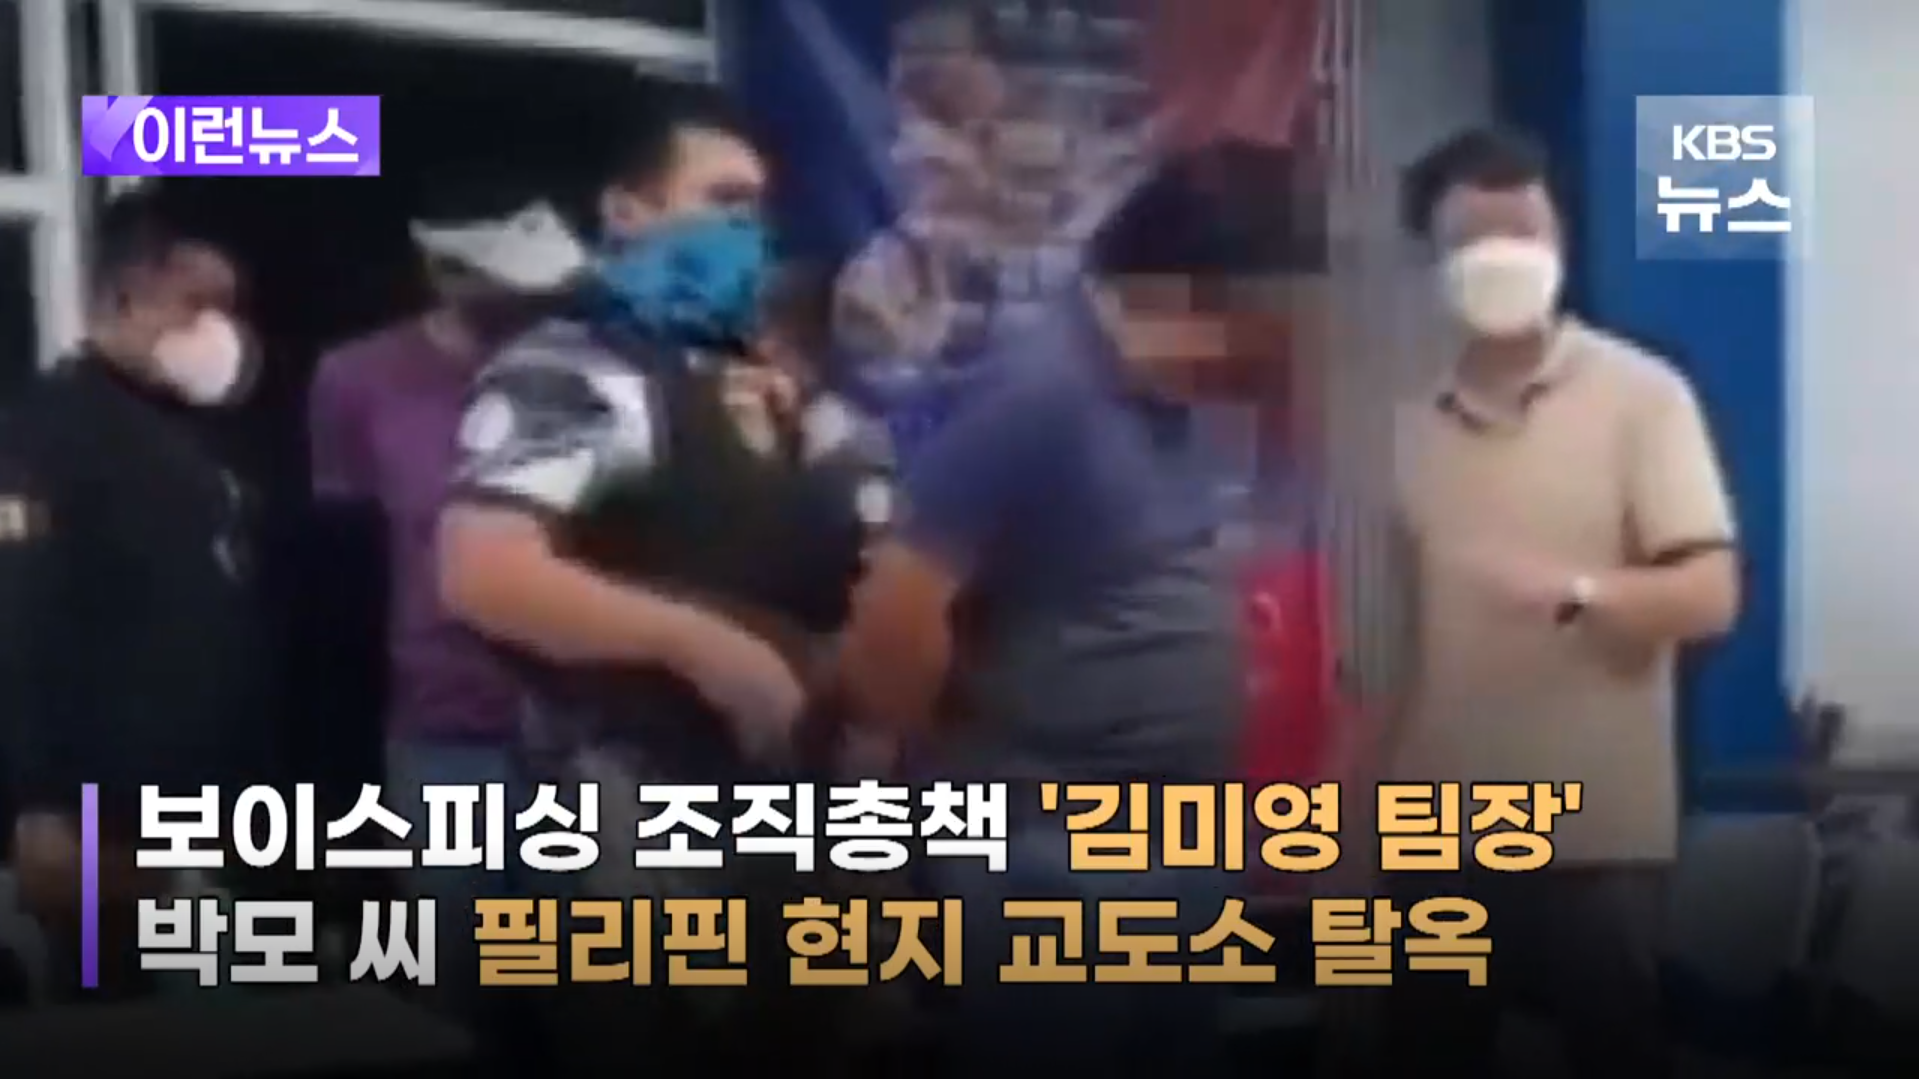 보이스피싱의 상징 김미영 팀장 필리핀 탈옥사건 (출처 - KBS 뉴스 스크린샷)